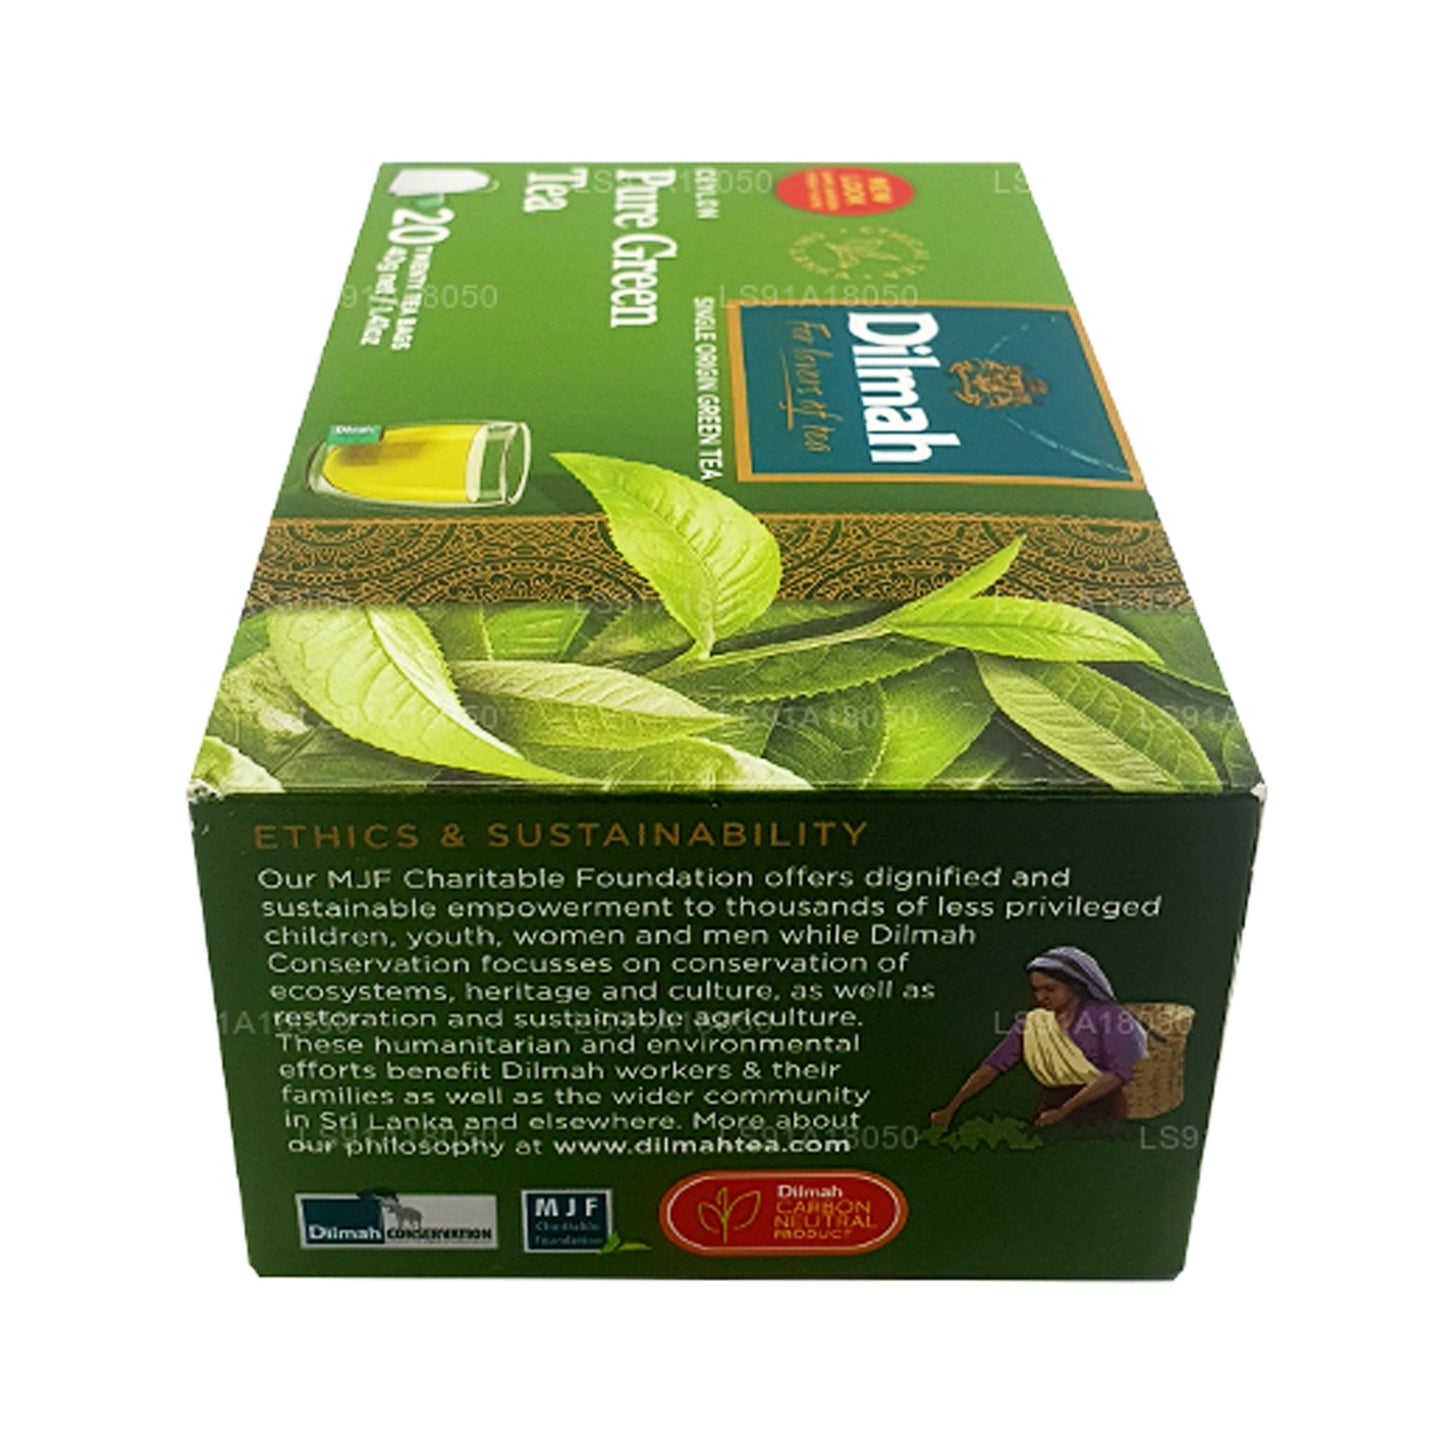 Dilmah Pure Ceylon Grüntee (40 g) 20 Teebeutel